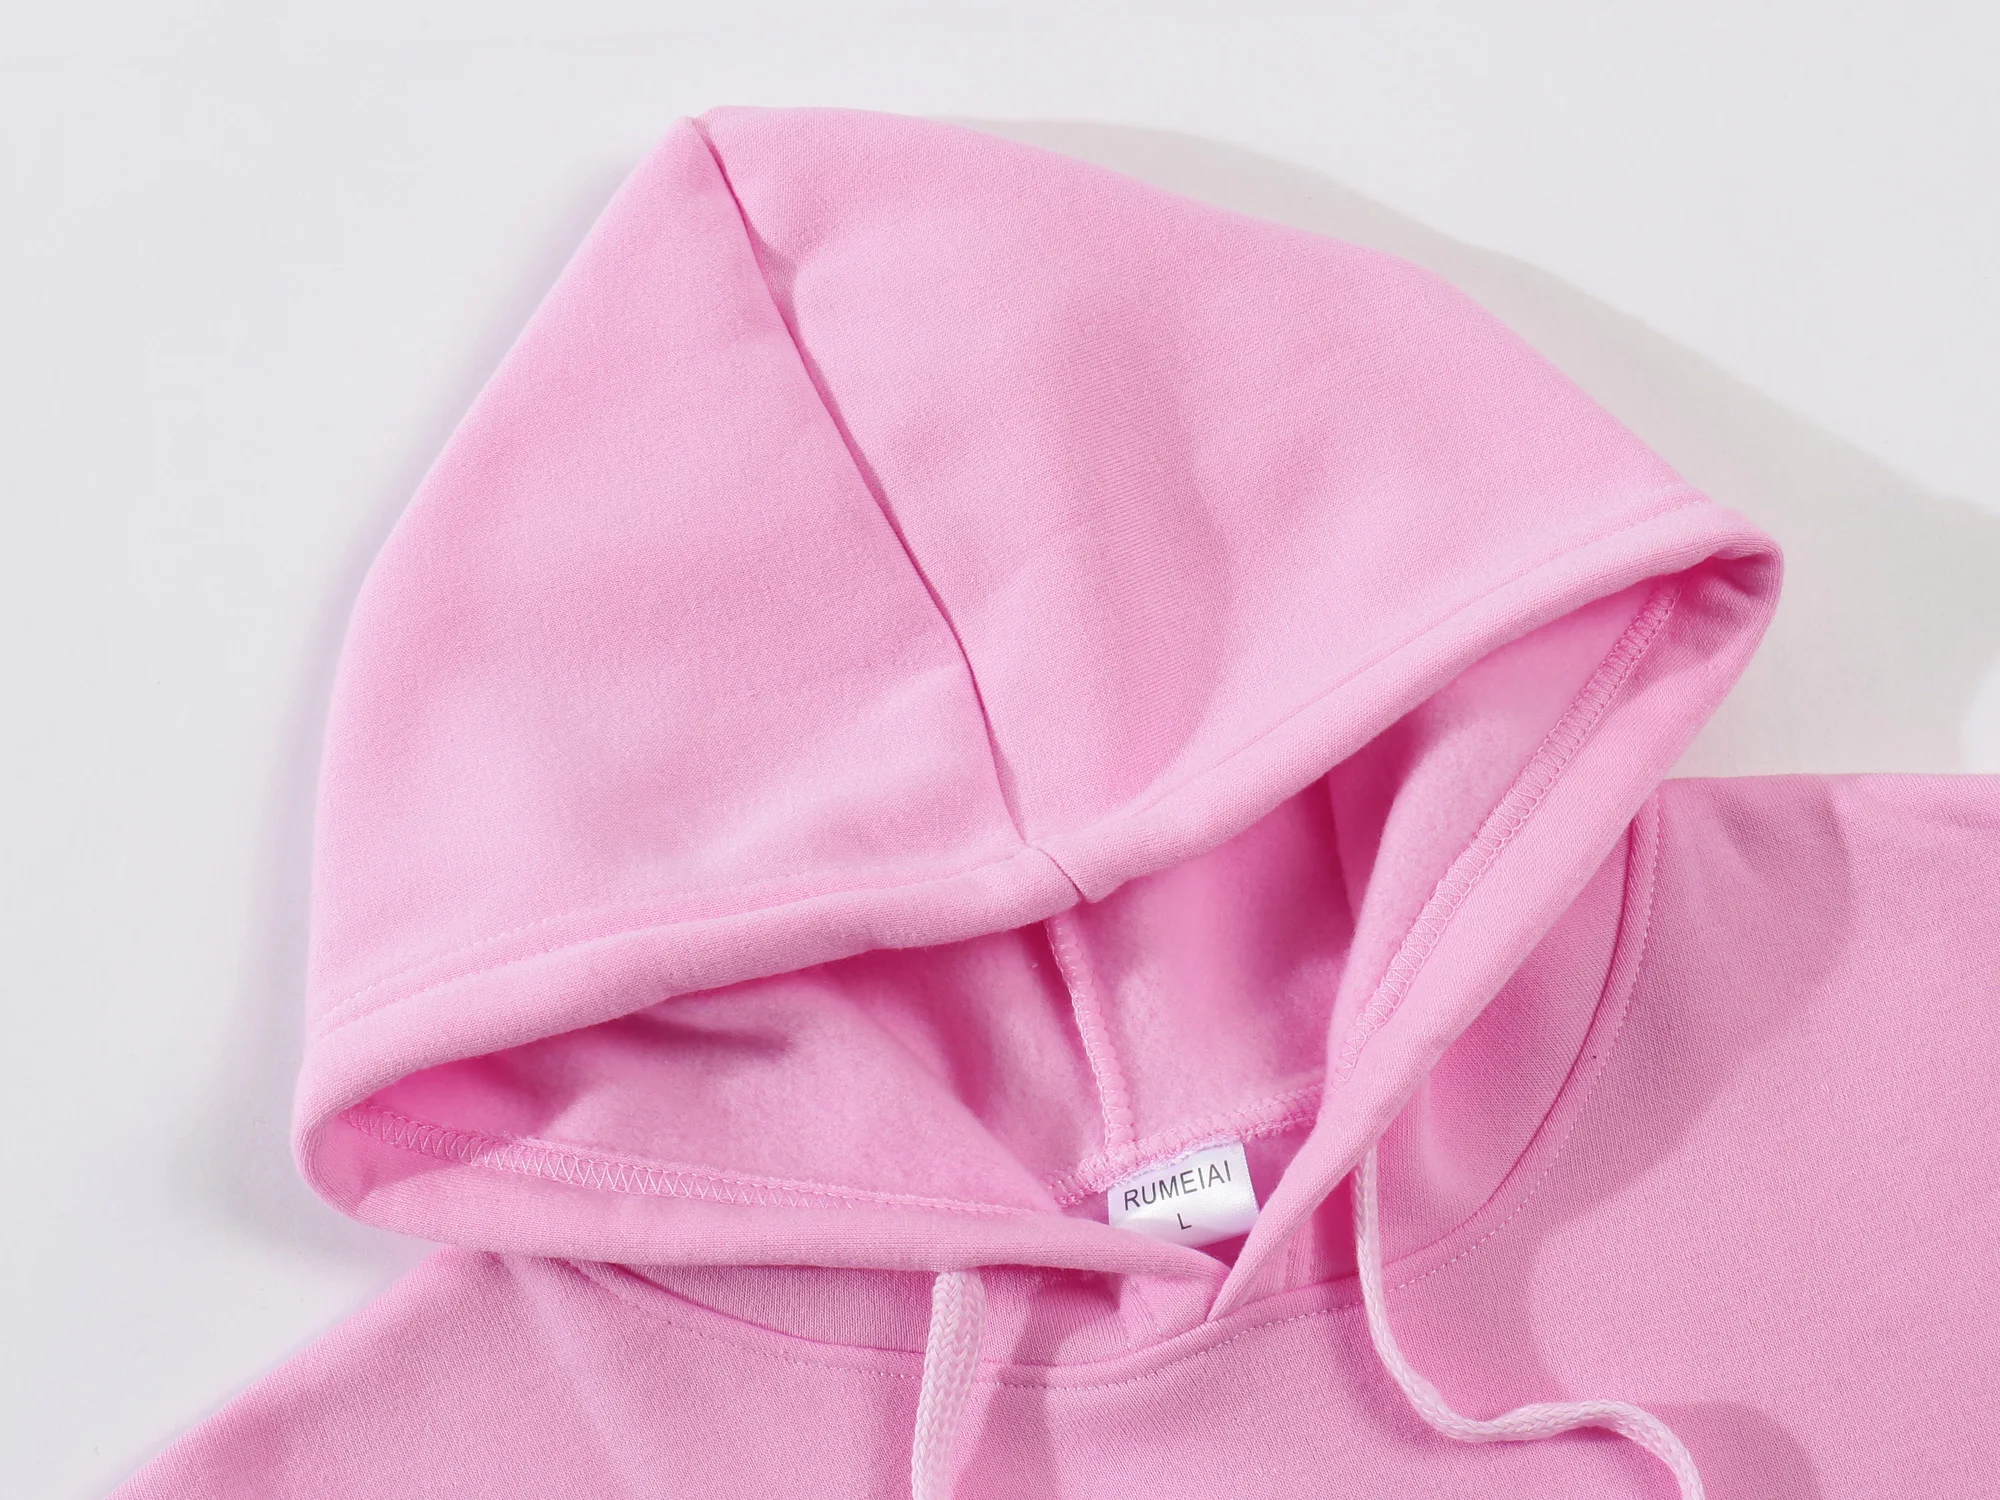 Marca Pink Jersey De Ropa Deportiva Casual Prendas De Mujer 2 Piezas De Poliéster Sudadera De Chándal De Sportswear Ejecución De Ropa 5